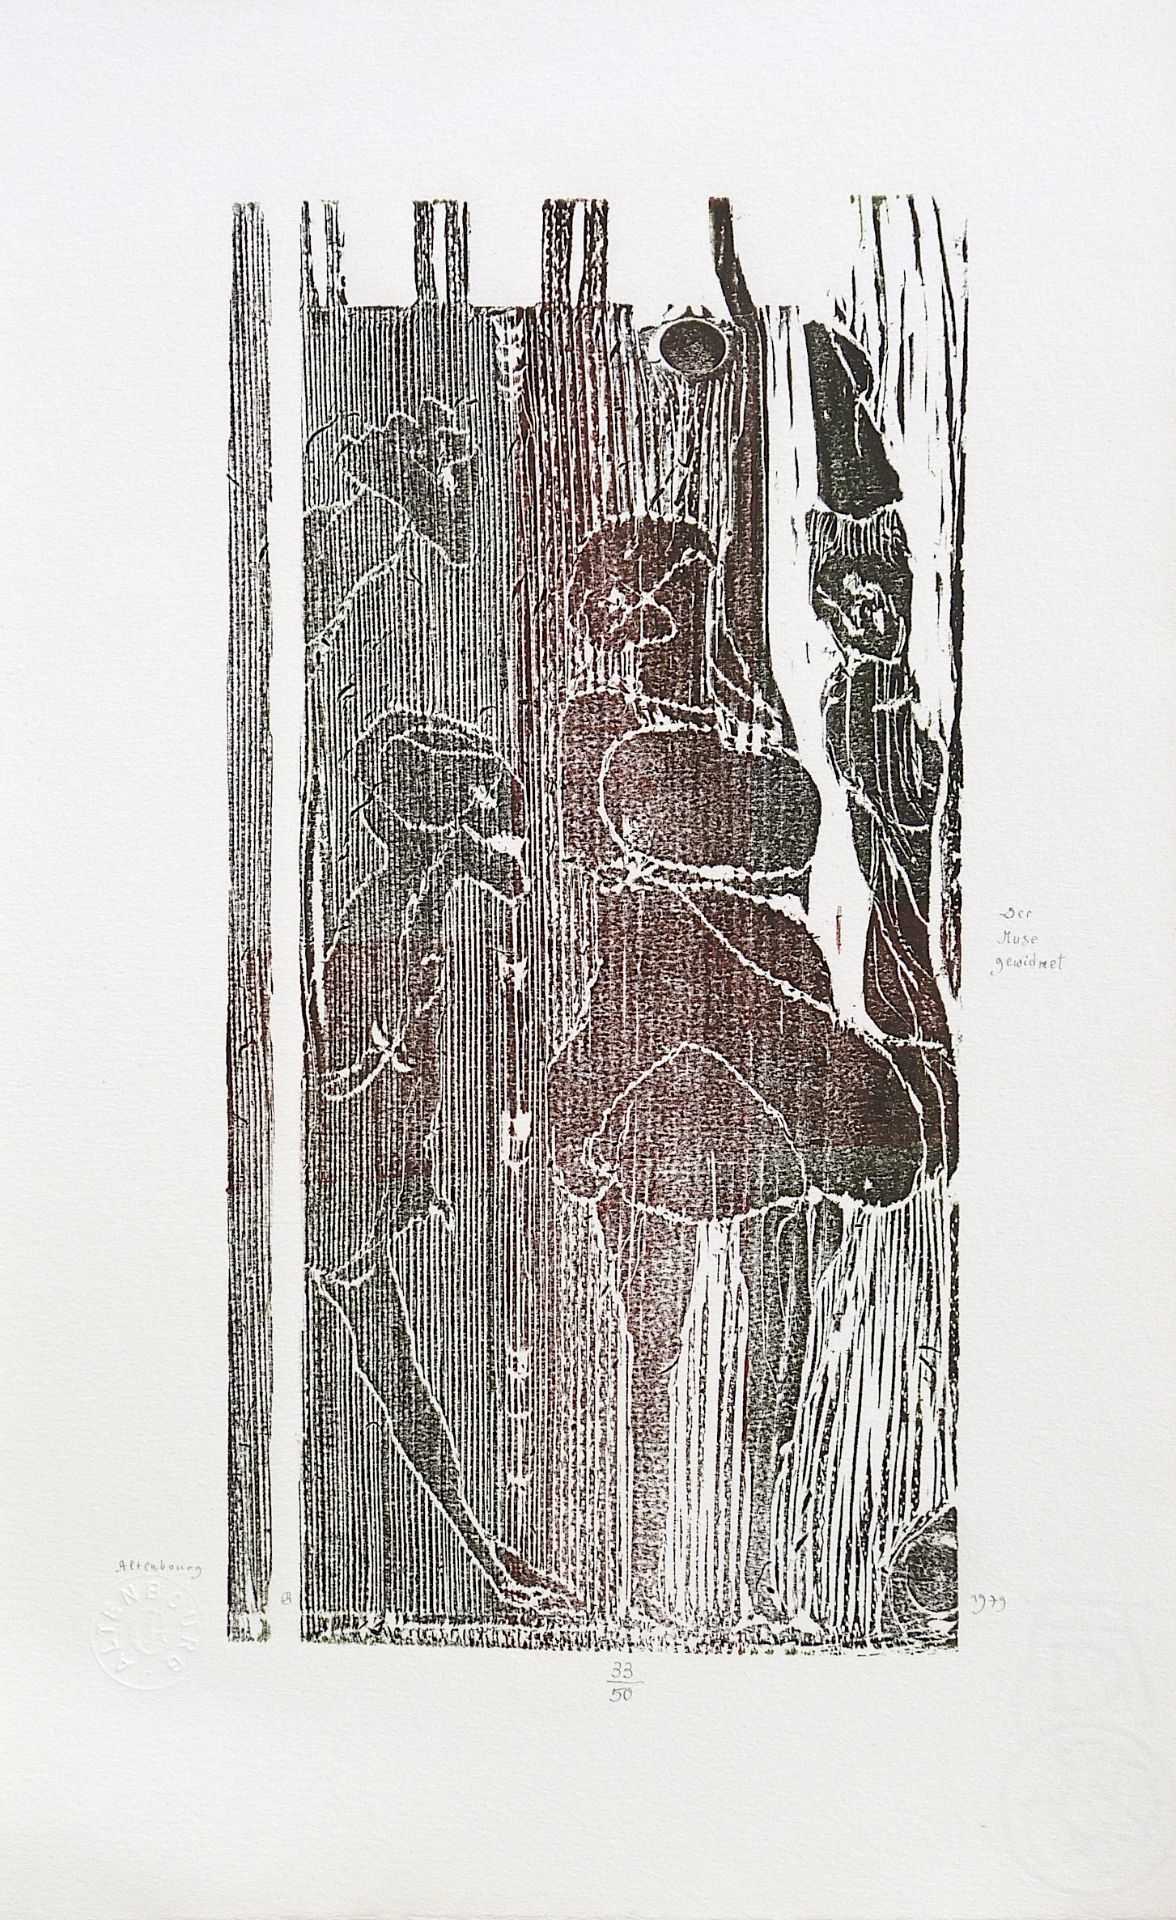 ALTENBOURG, GERHARD (Gerhard Ströch): "Der Muse gewidmet", 1979